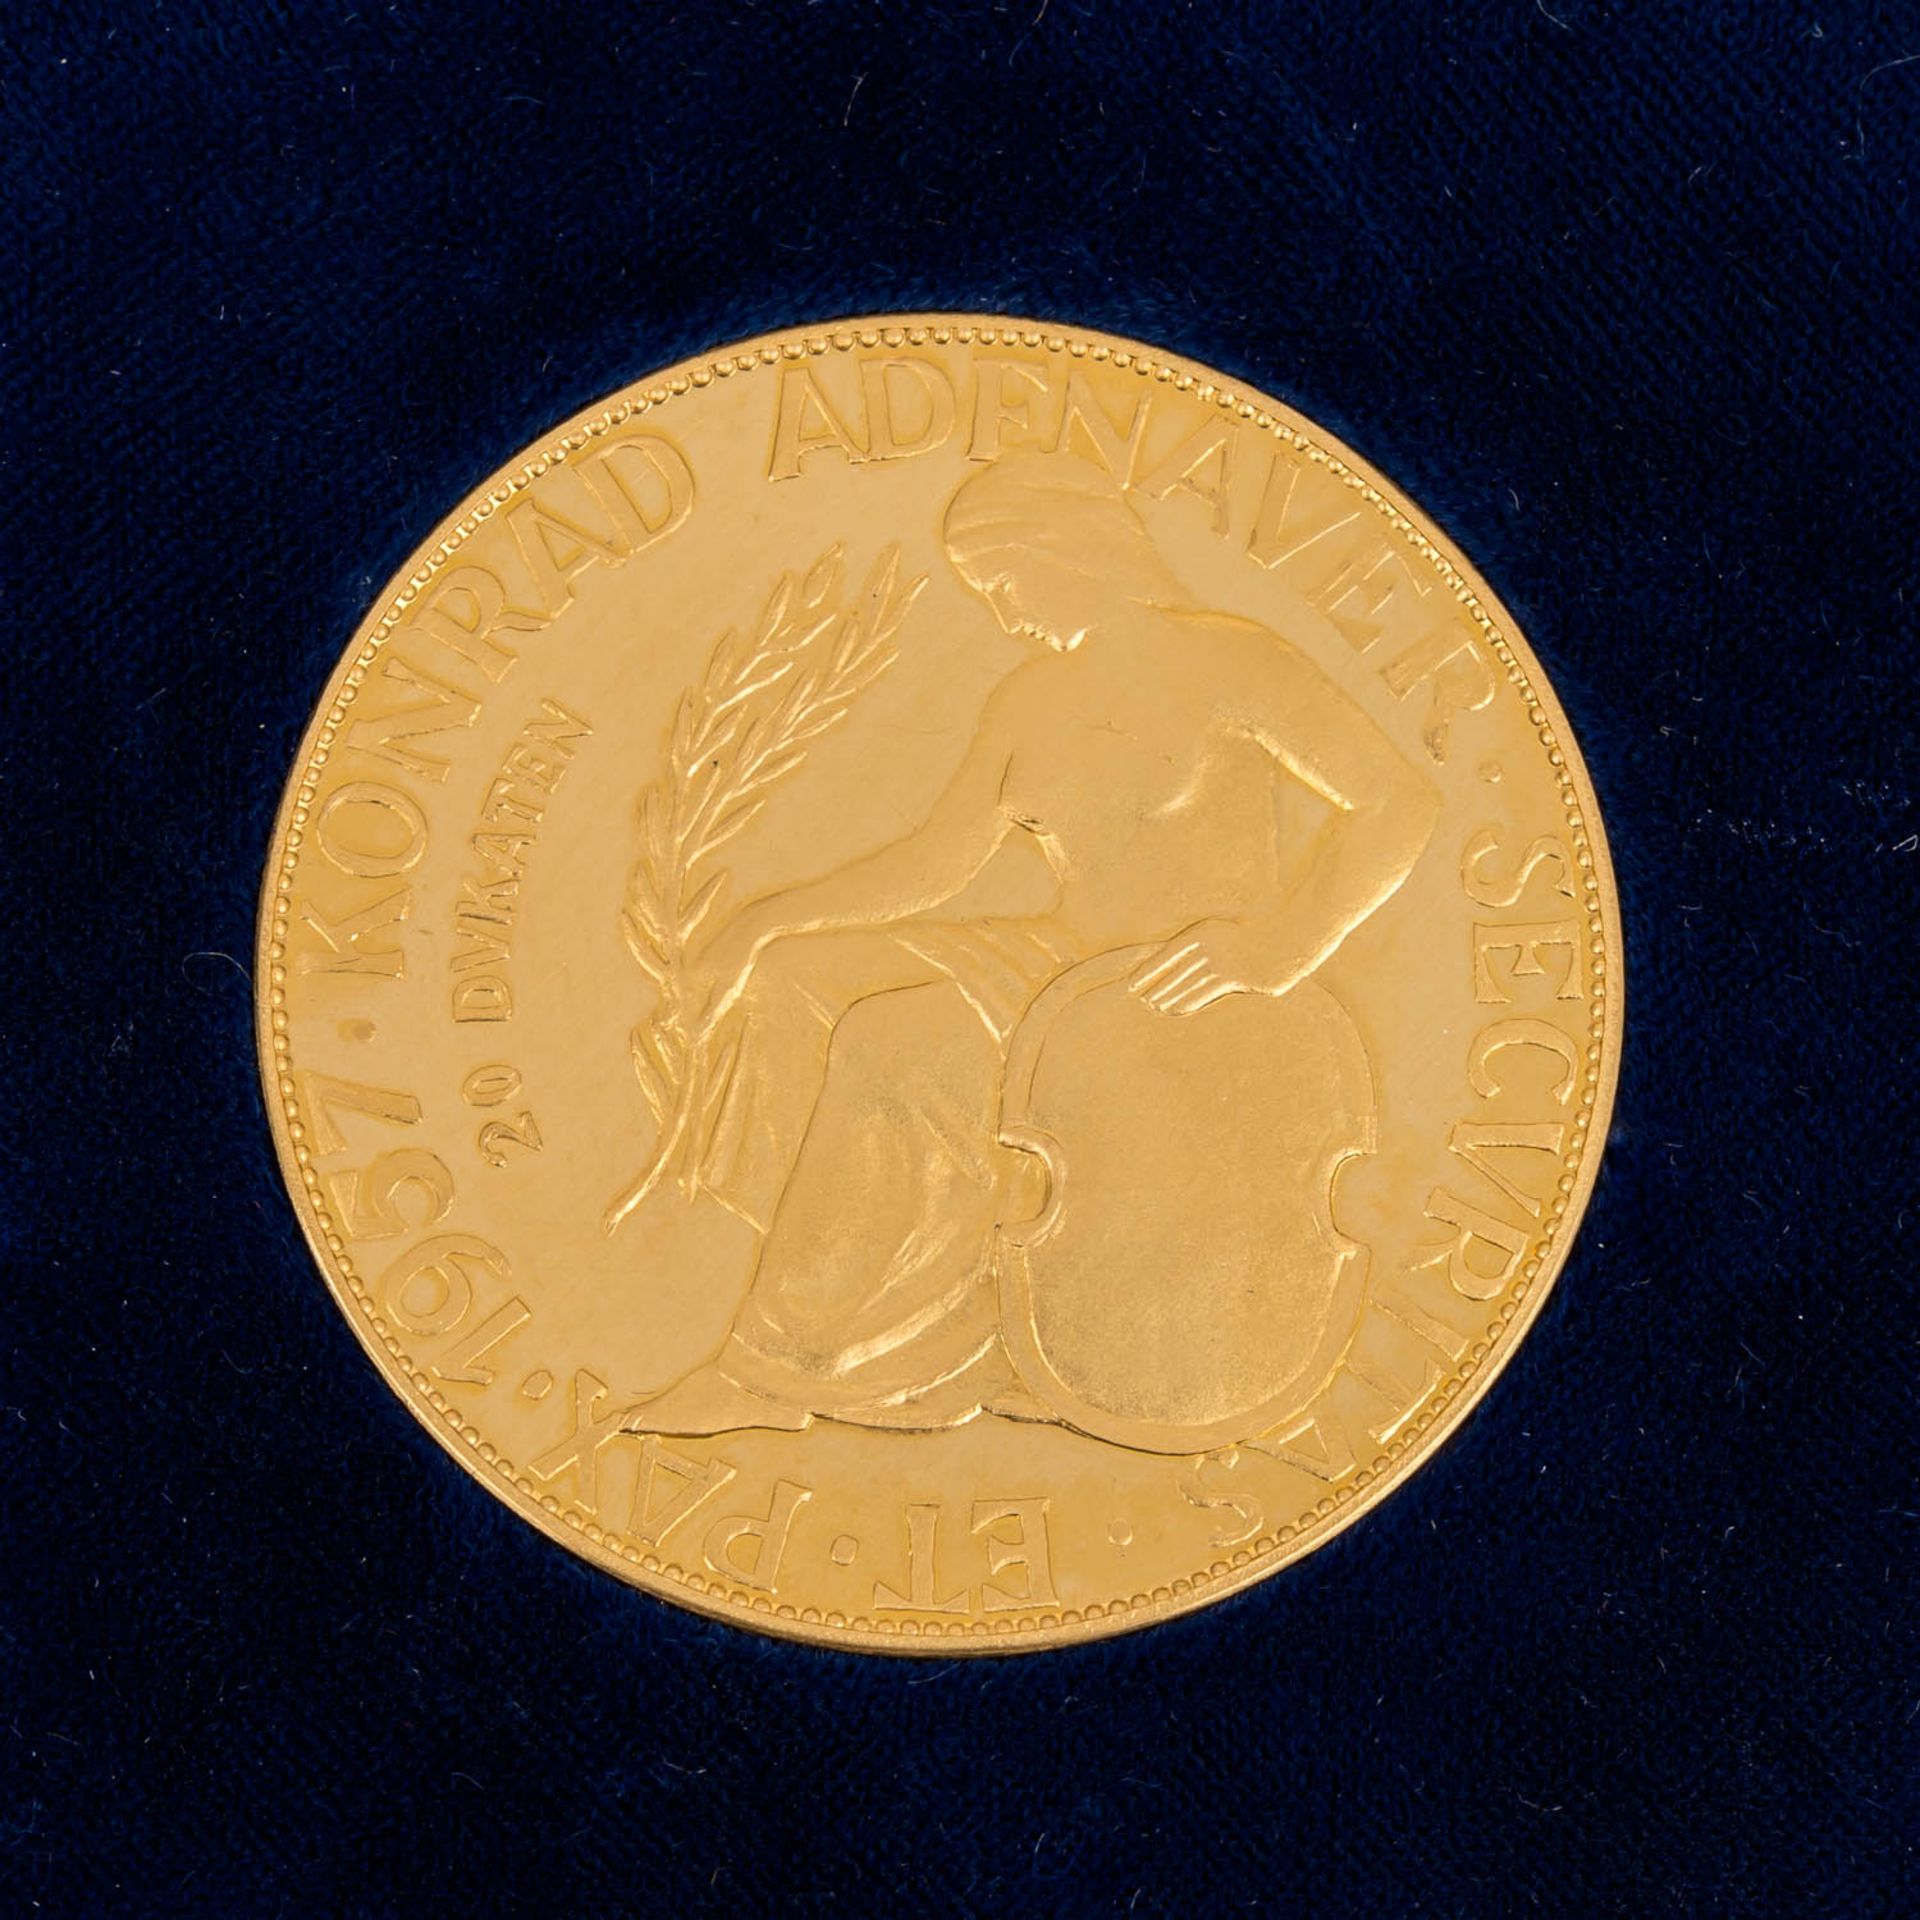 BRD - Goldene Gedenkmedaille zu 20 Dukaten 1957, - Image 3 of 3